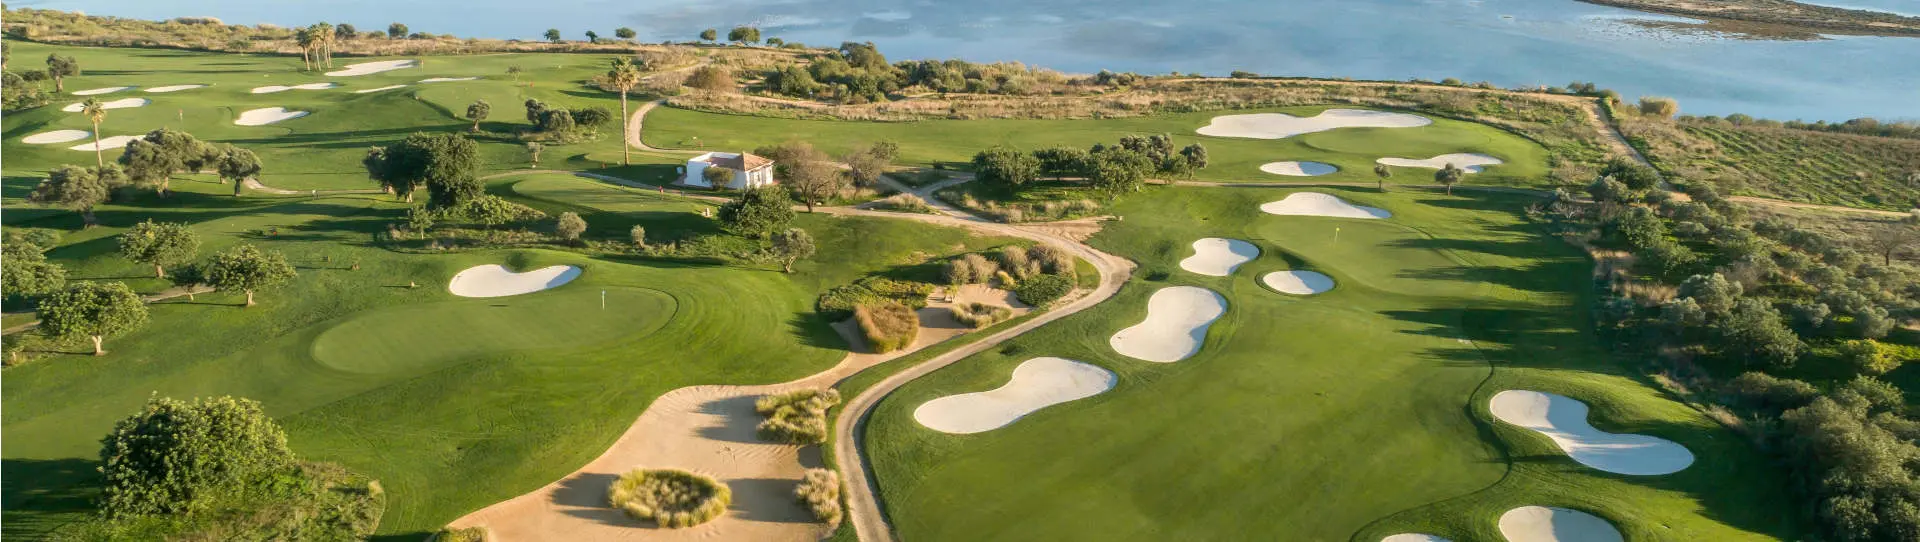 Portugal golf holidays - Quinta da Ria & Quinta de Cima 4 Rounds Golf Package - Photo 1